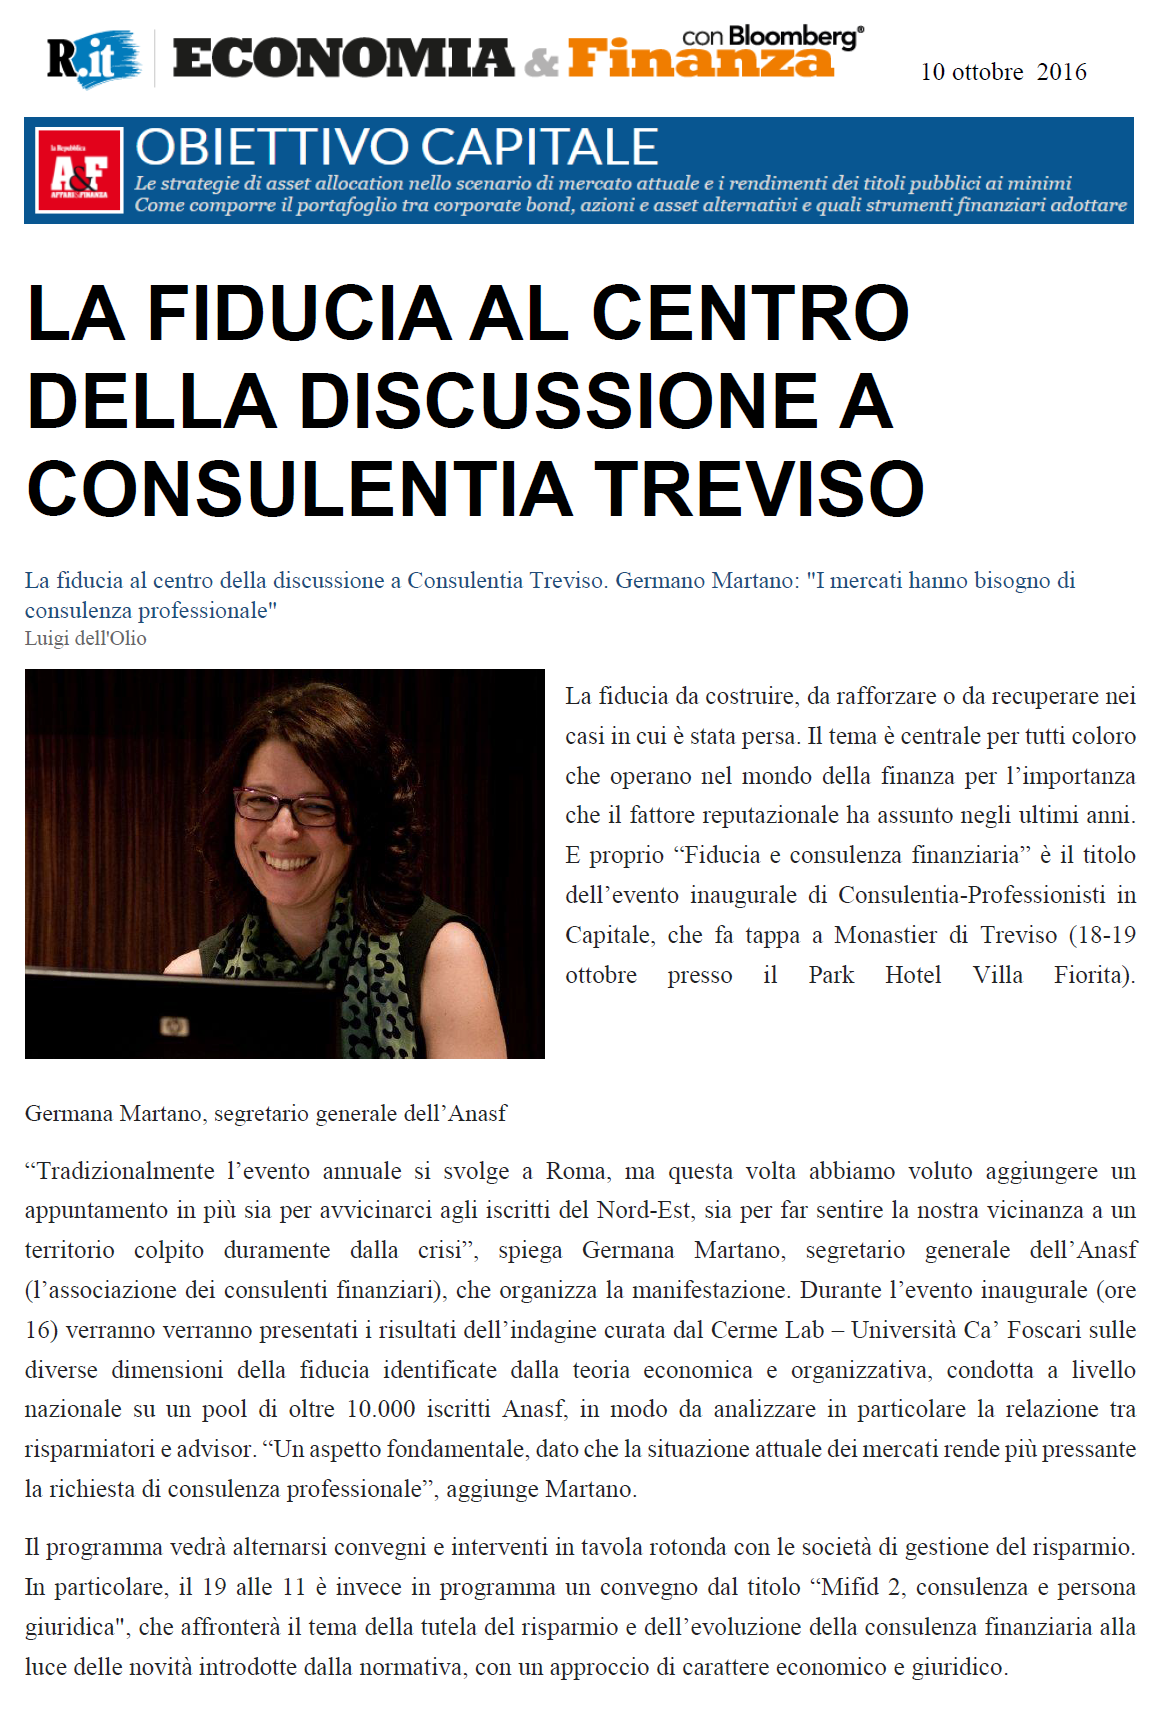 La fiducia al centro della discussione a Consulentia Treviso